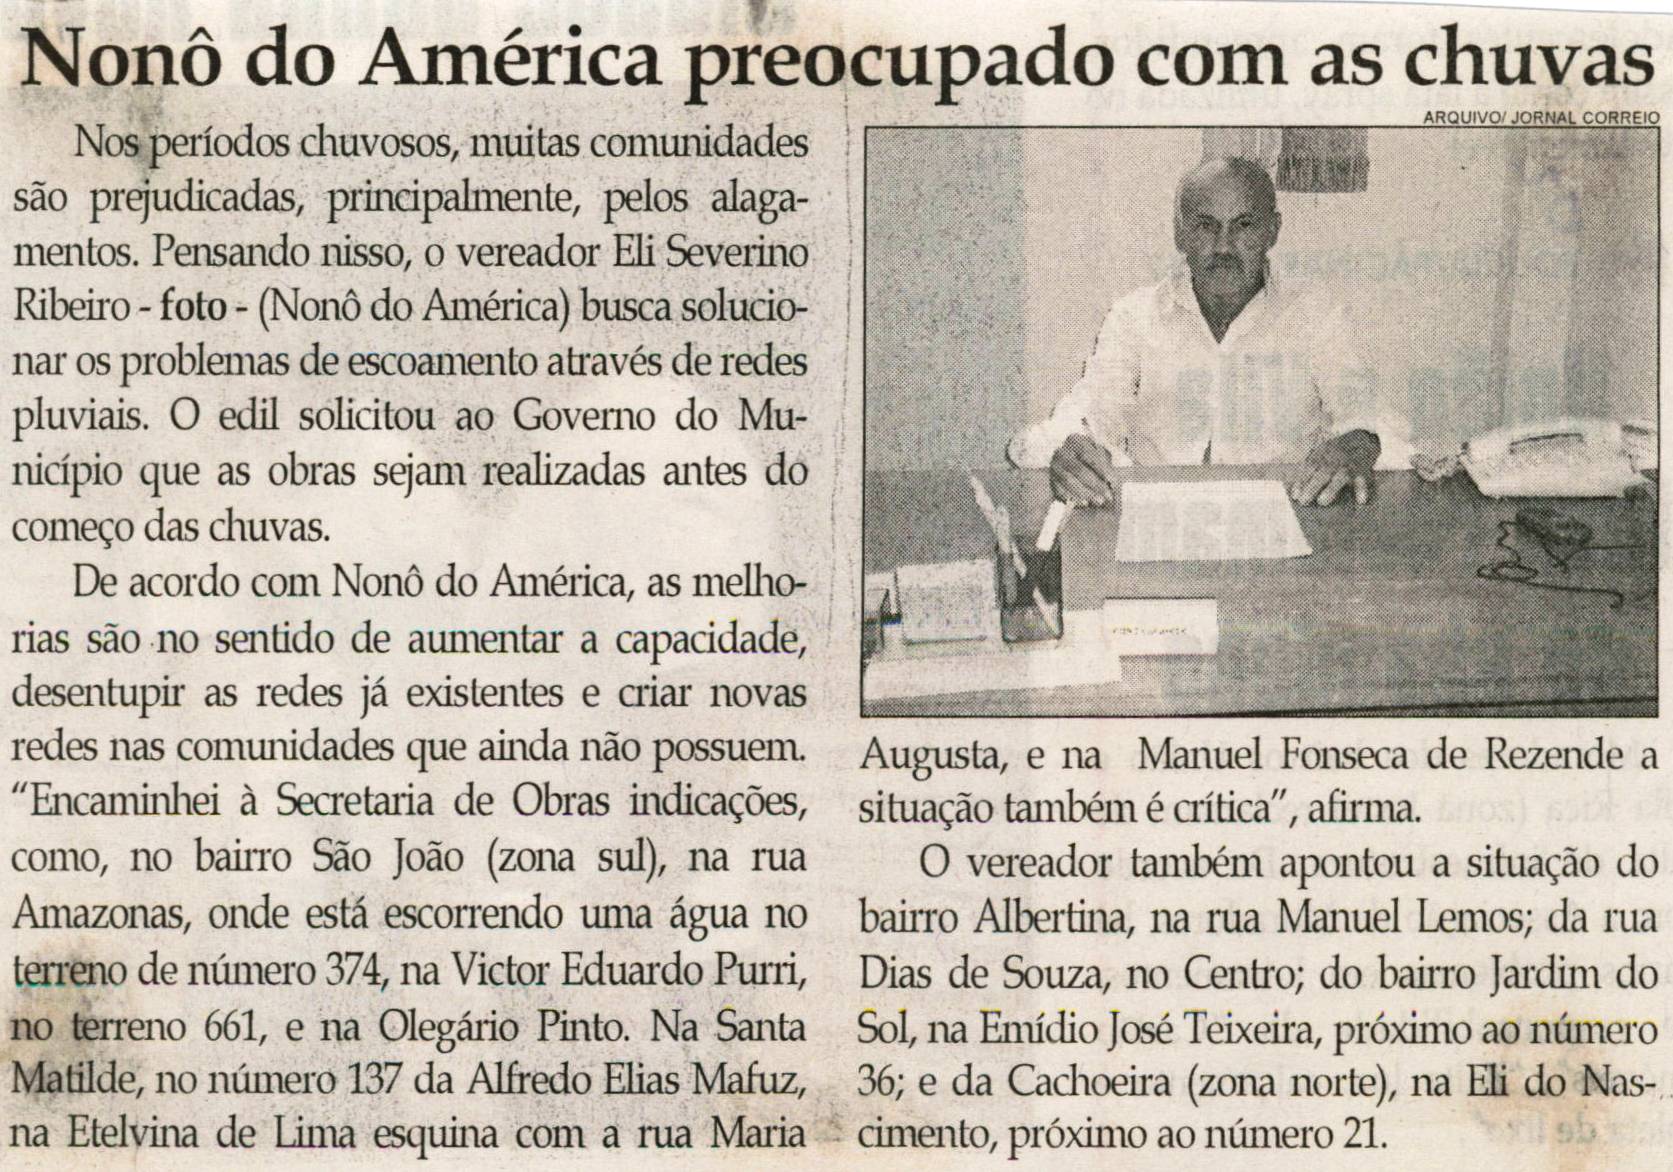 Nonô do América preocupado com as chuvas. Jornal Correio da Cidade, Conselheiro Lafaiete, 25 set. 2010, p. 02.